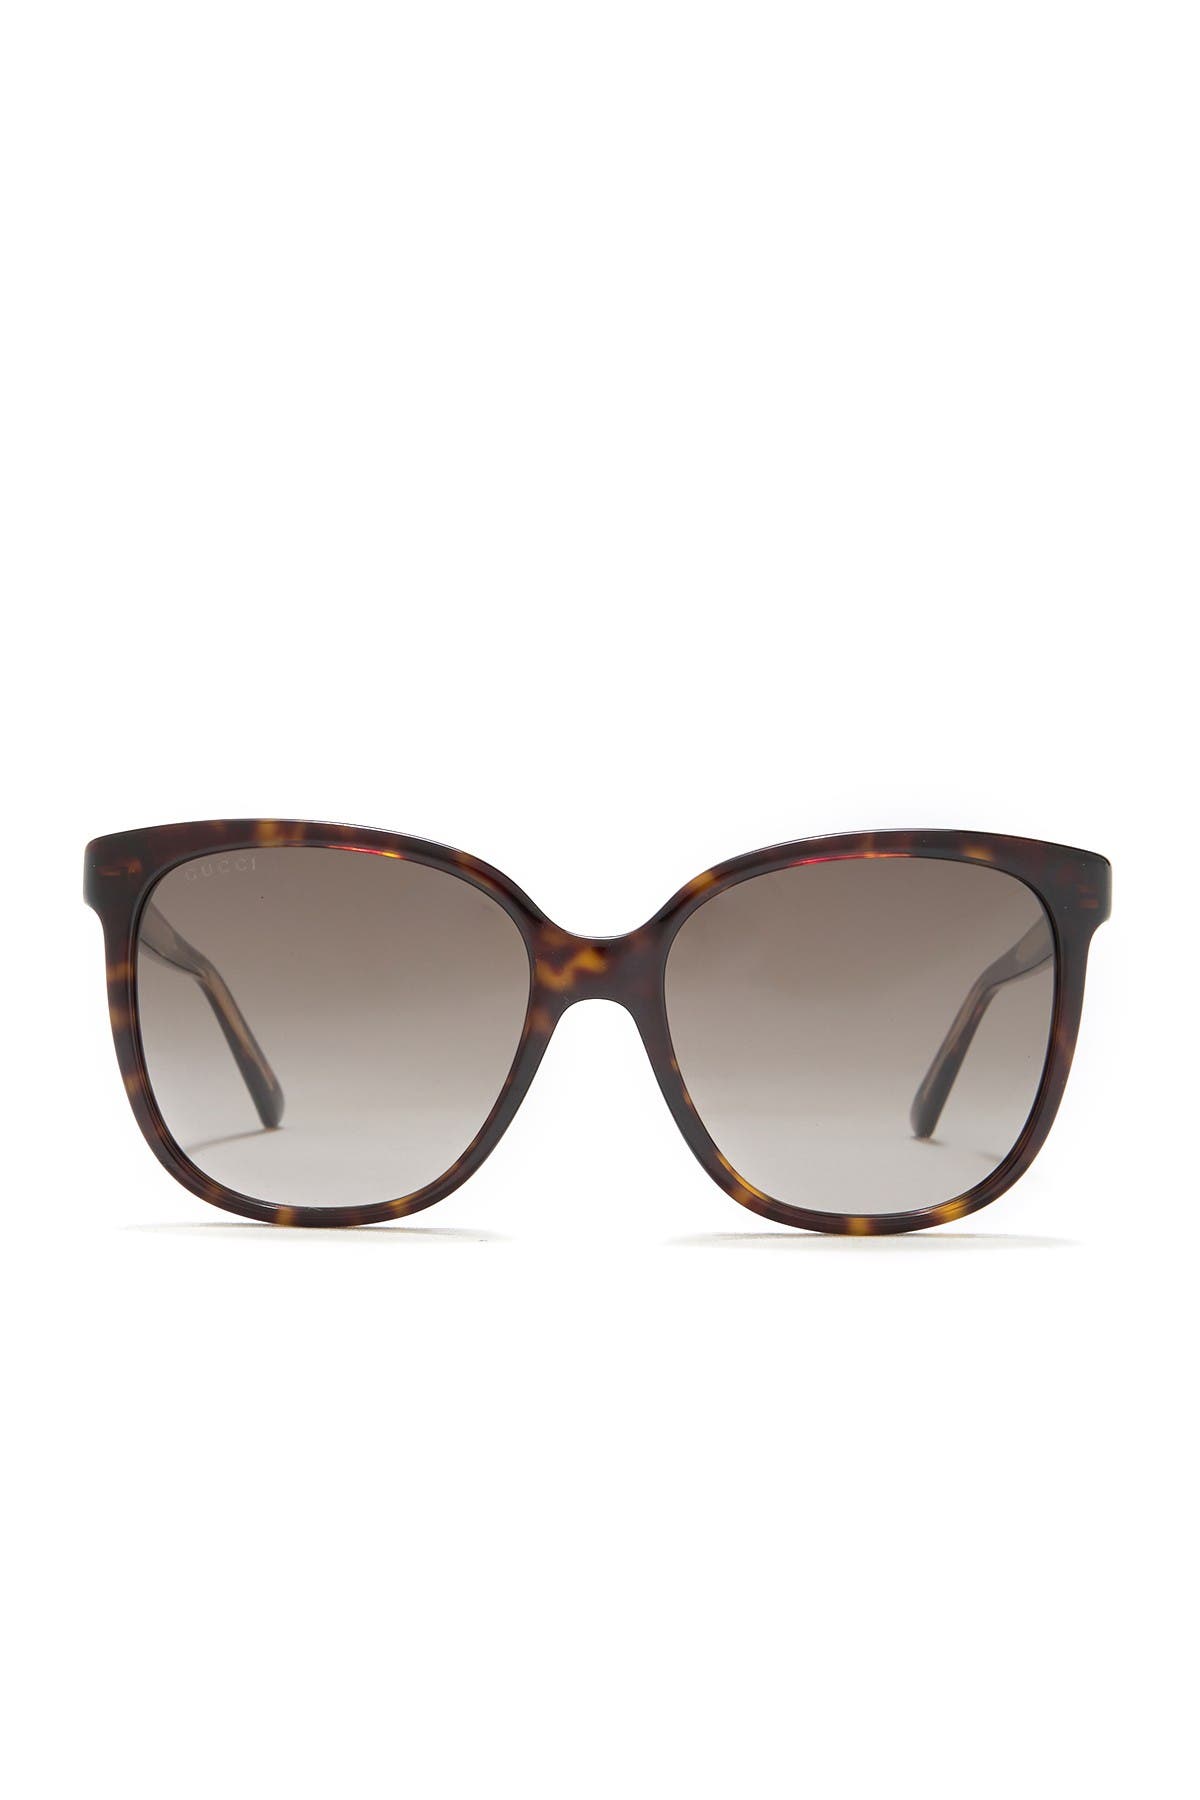 GUCCI | 55mm Oversize Square Sunglasses 